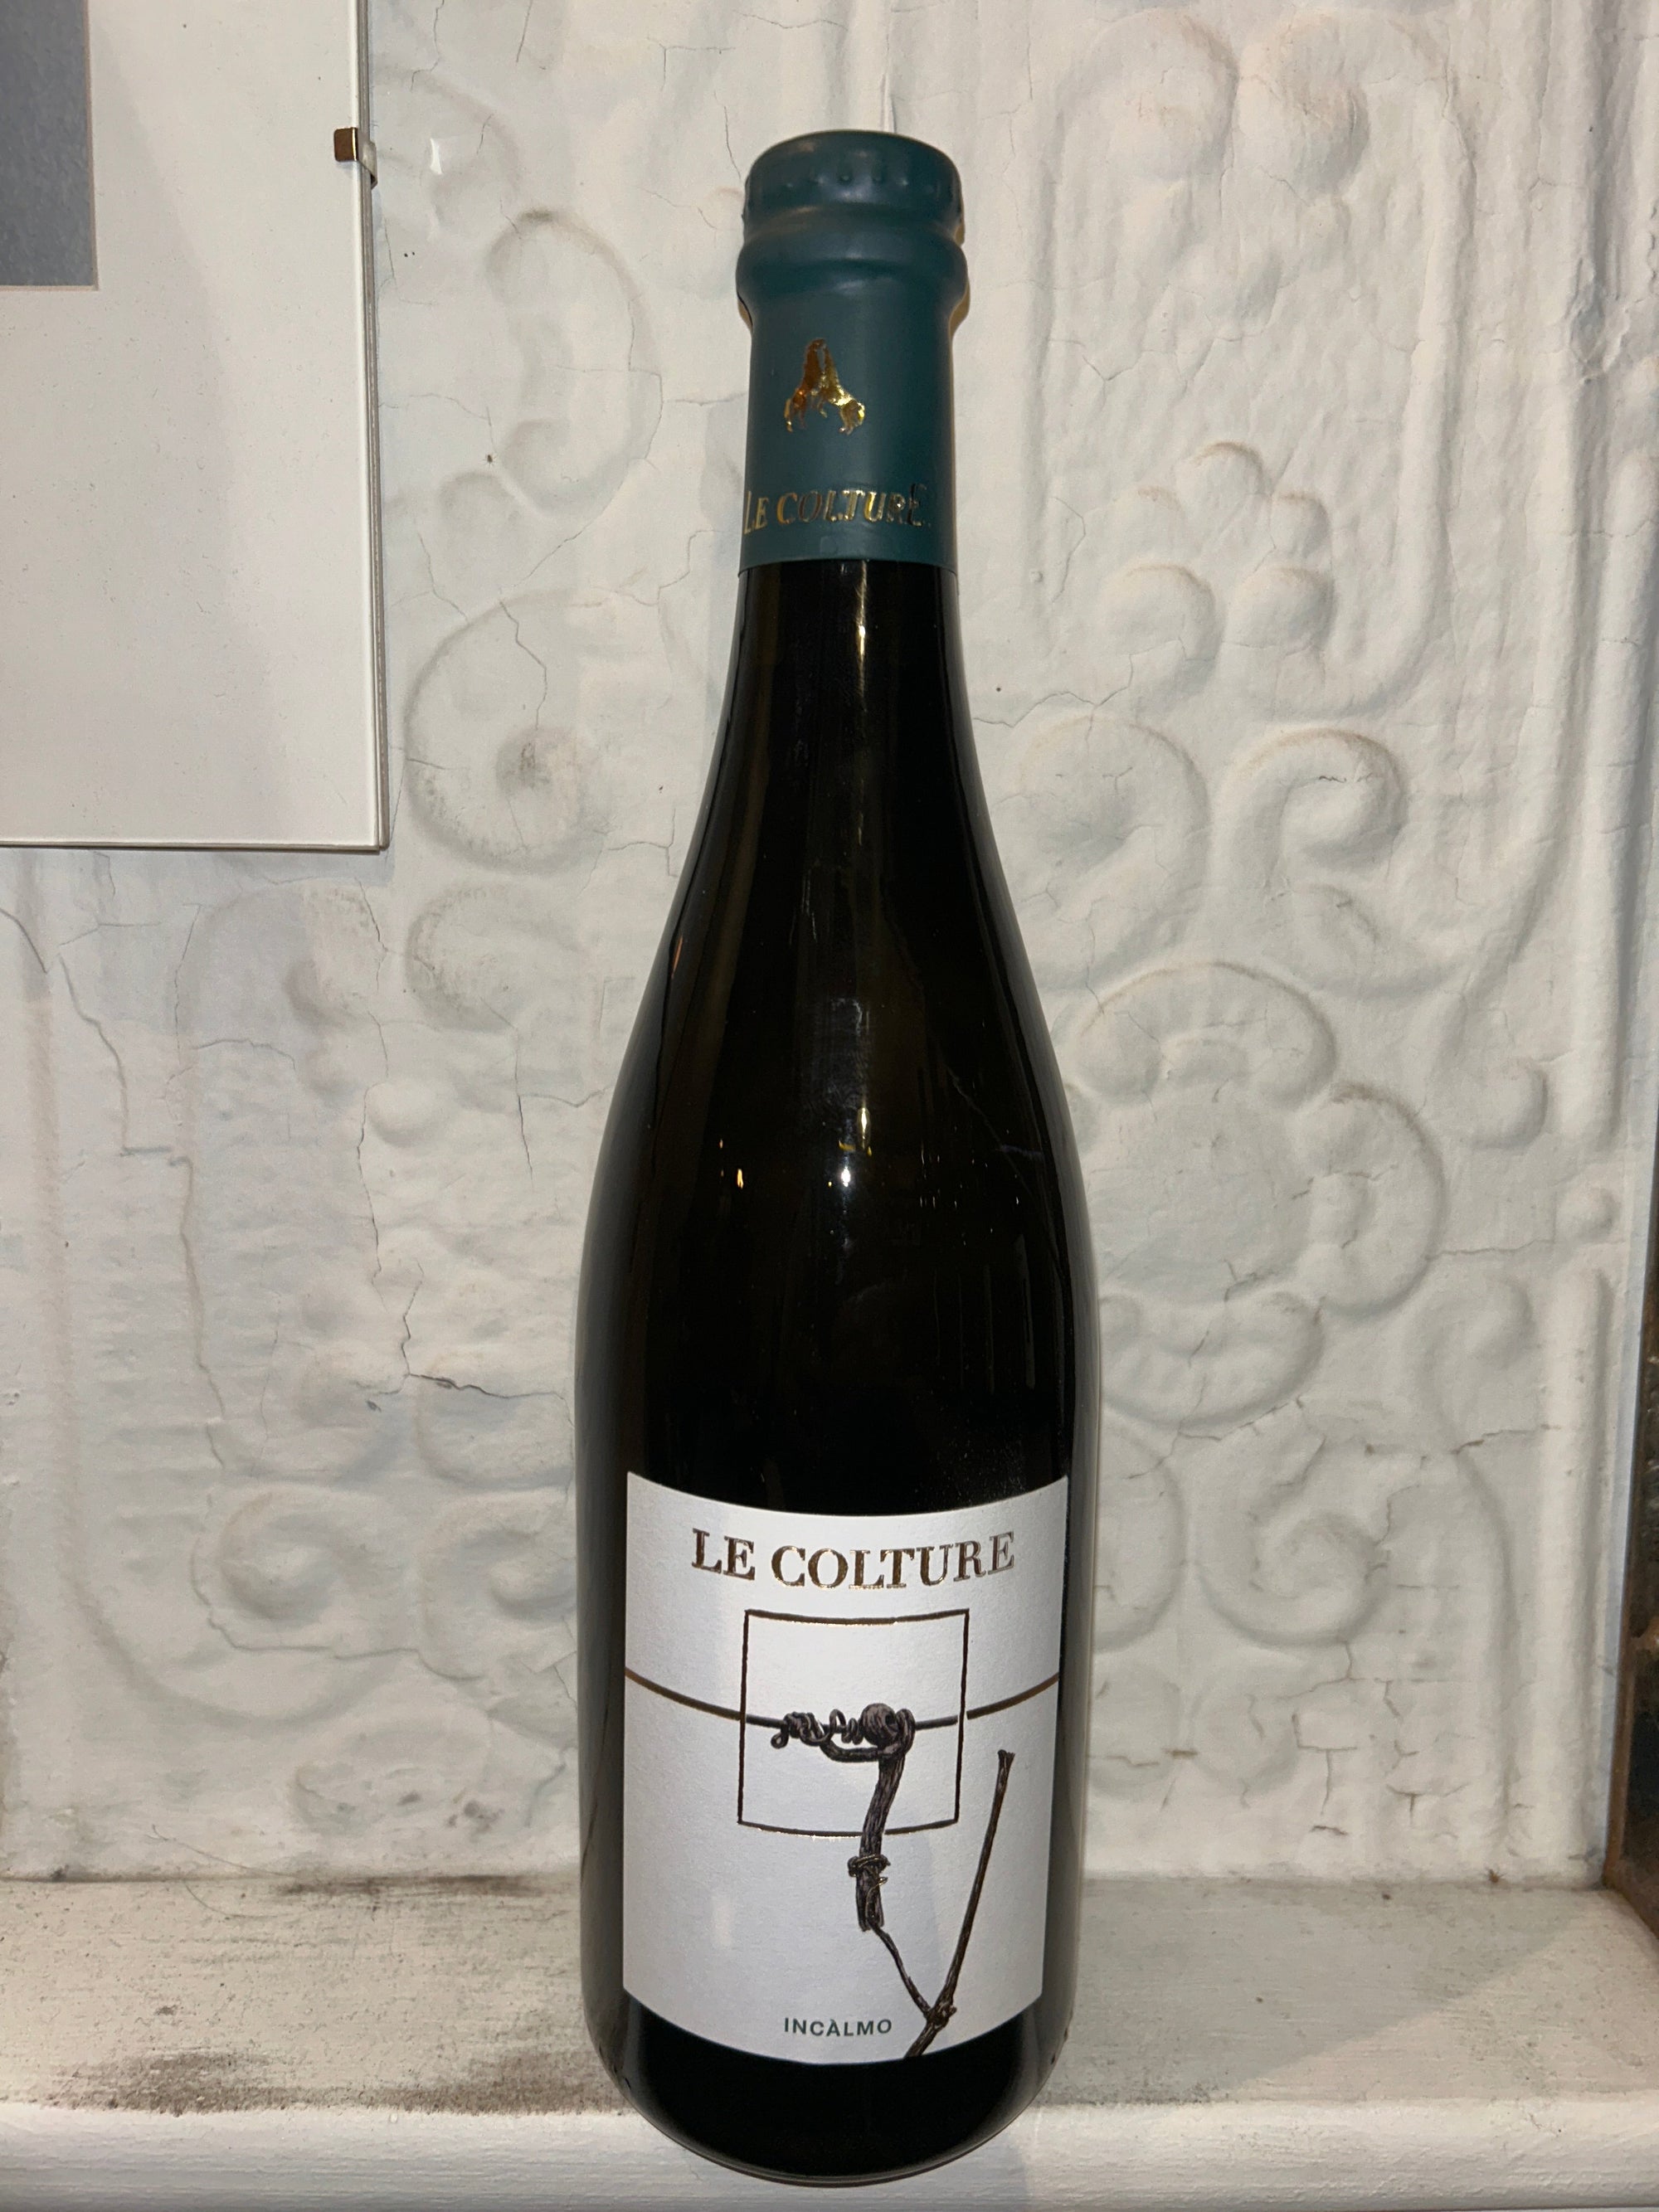 Incalmo Frizzante, Le Colture NV (Veneto, Italy)-Wine-Bibber & Bell